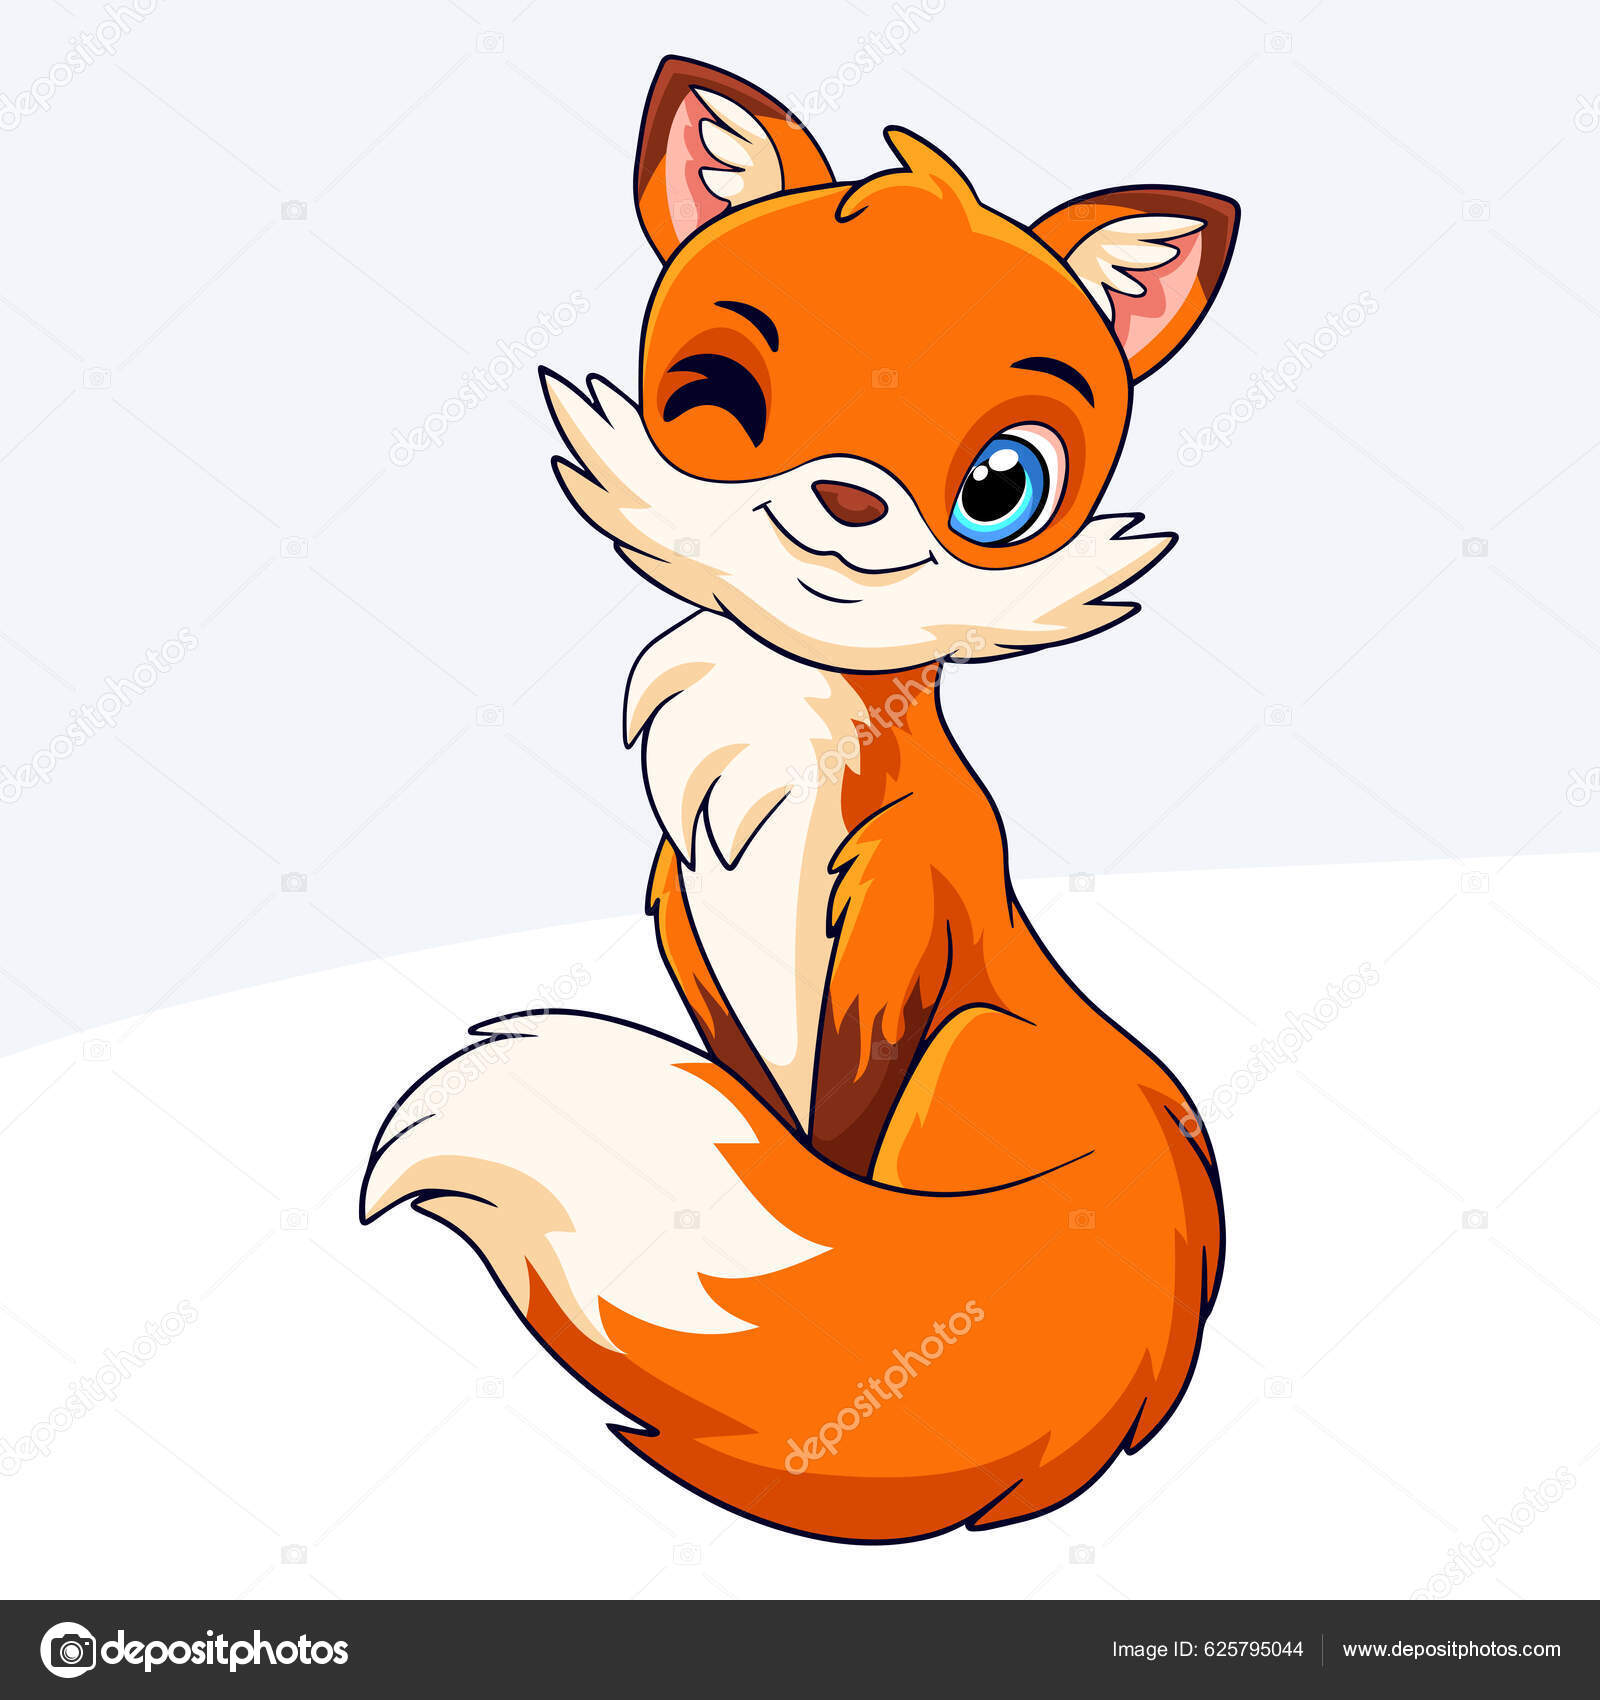 Uma raposa de desenho animado com uma cauda que diz 'raposa